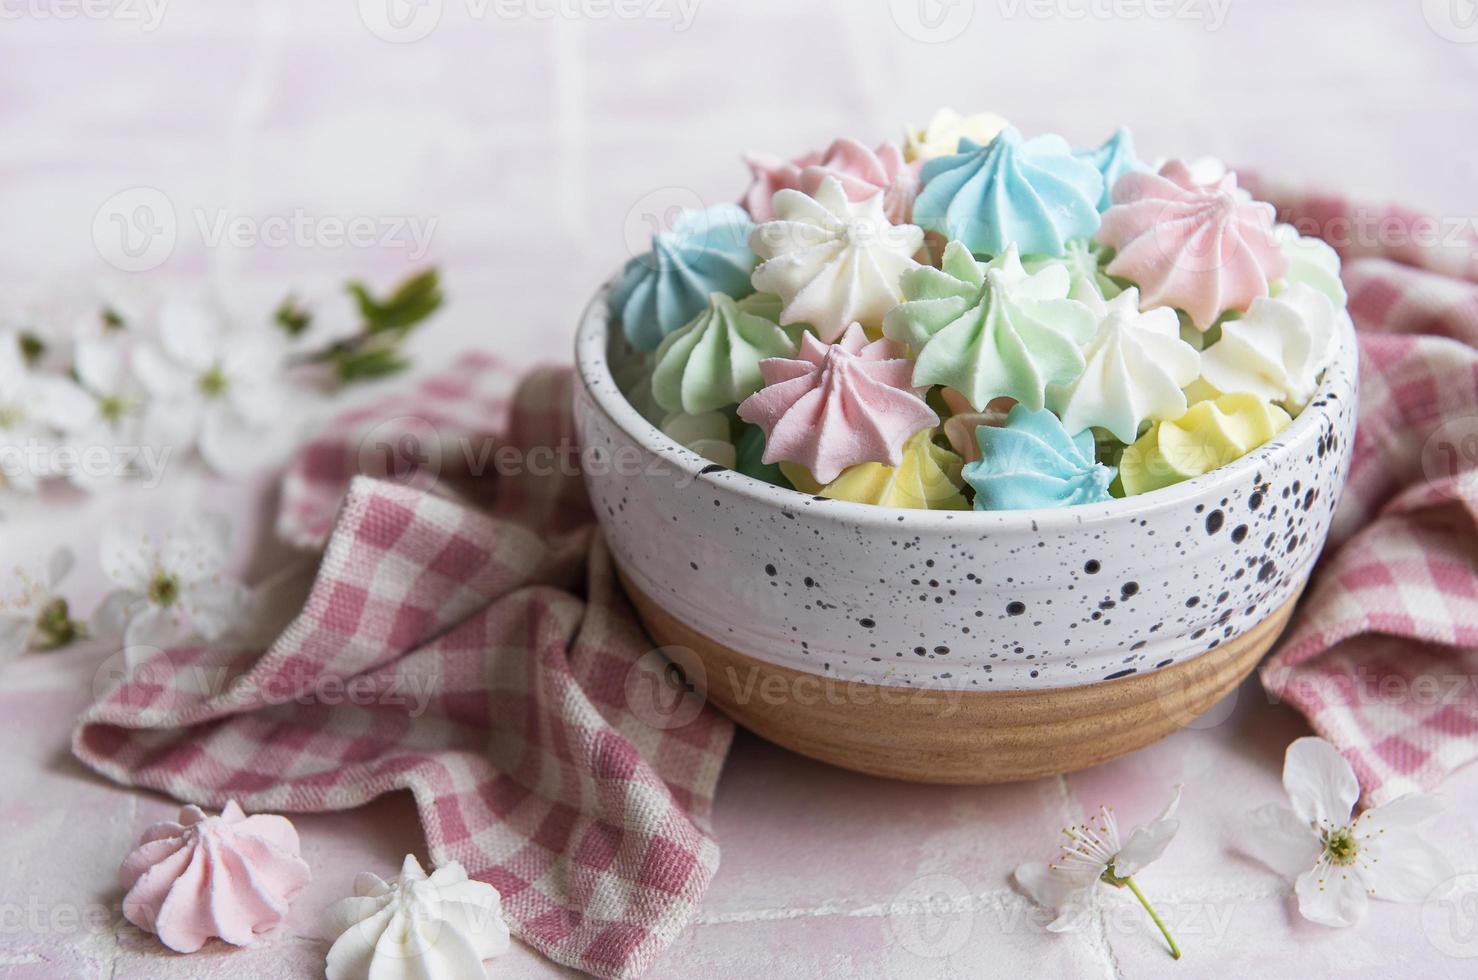 petites meringues colorées dans le bol en céramique photo